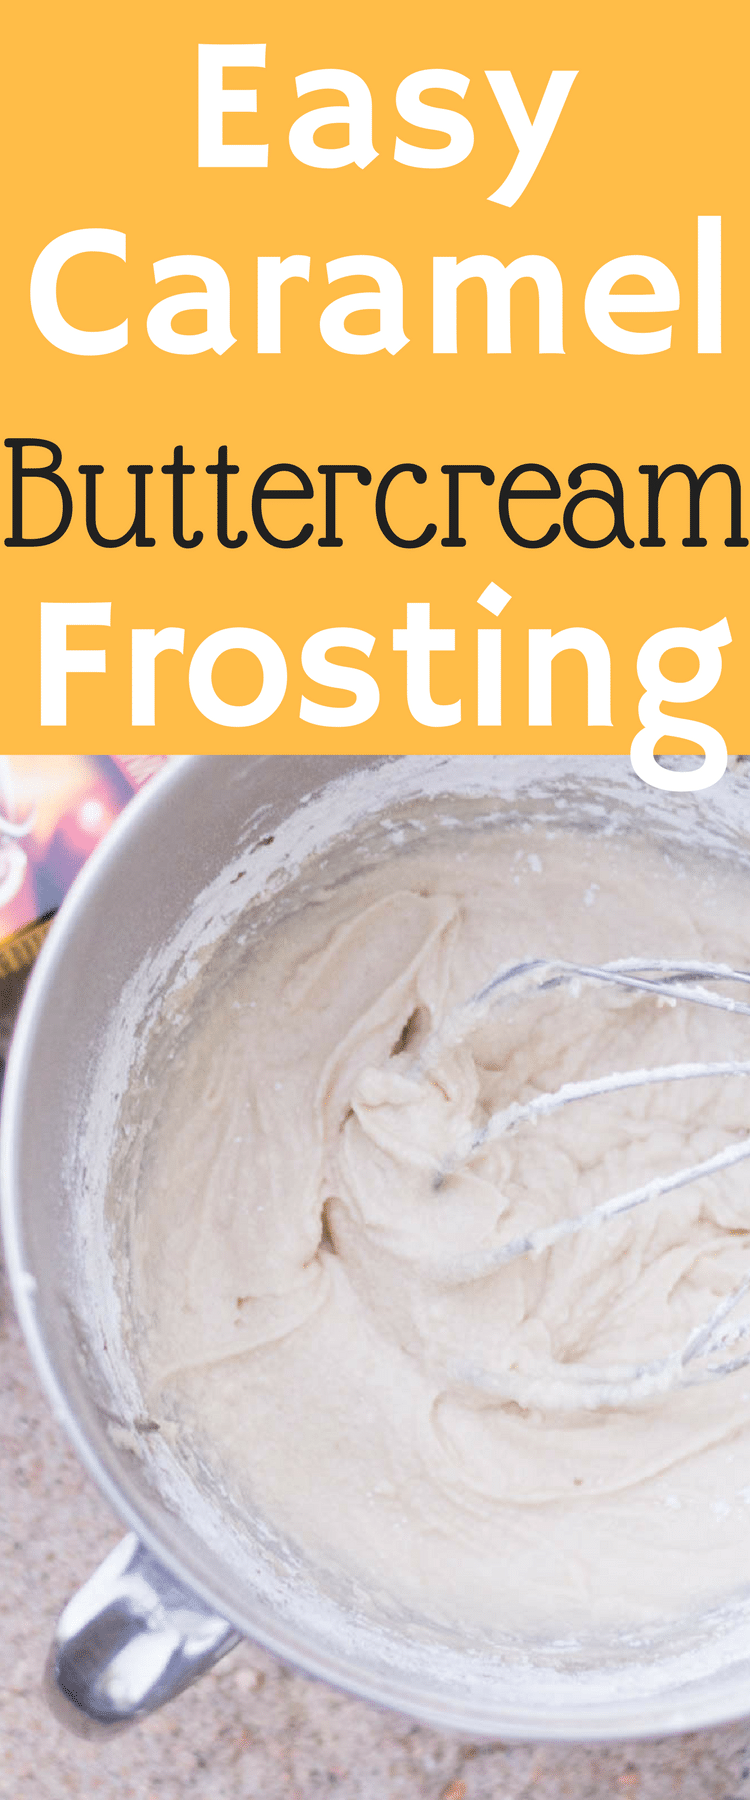 Easy Caramel Buttercream Frosting / Buttercream Frosting / Caramel Frosting